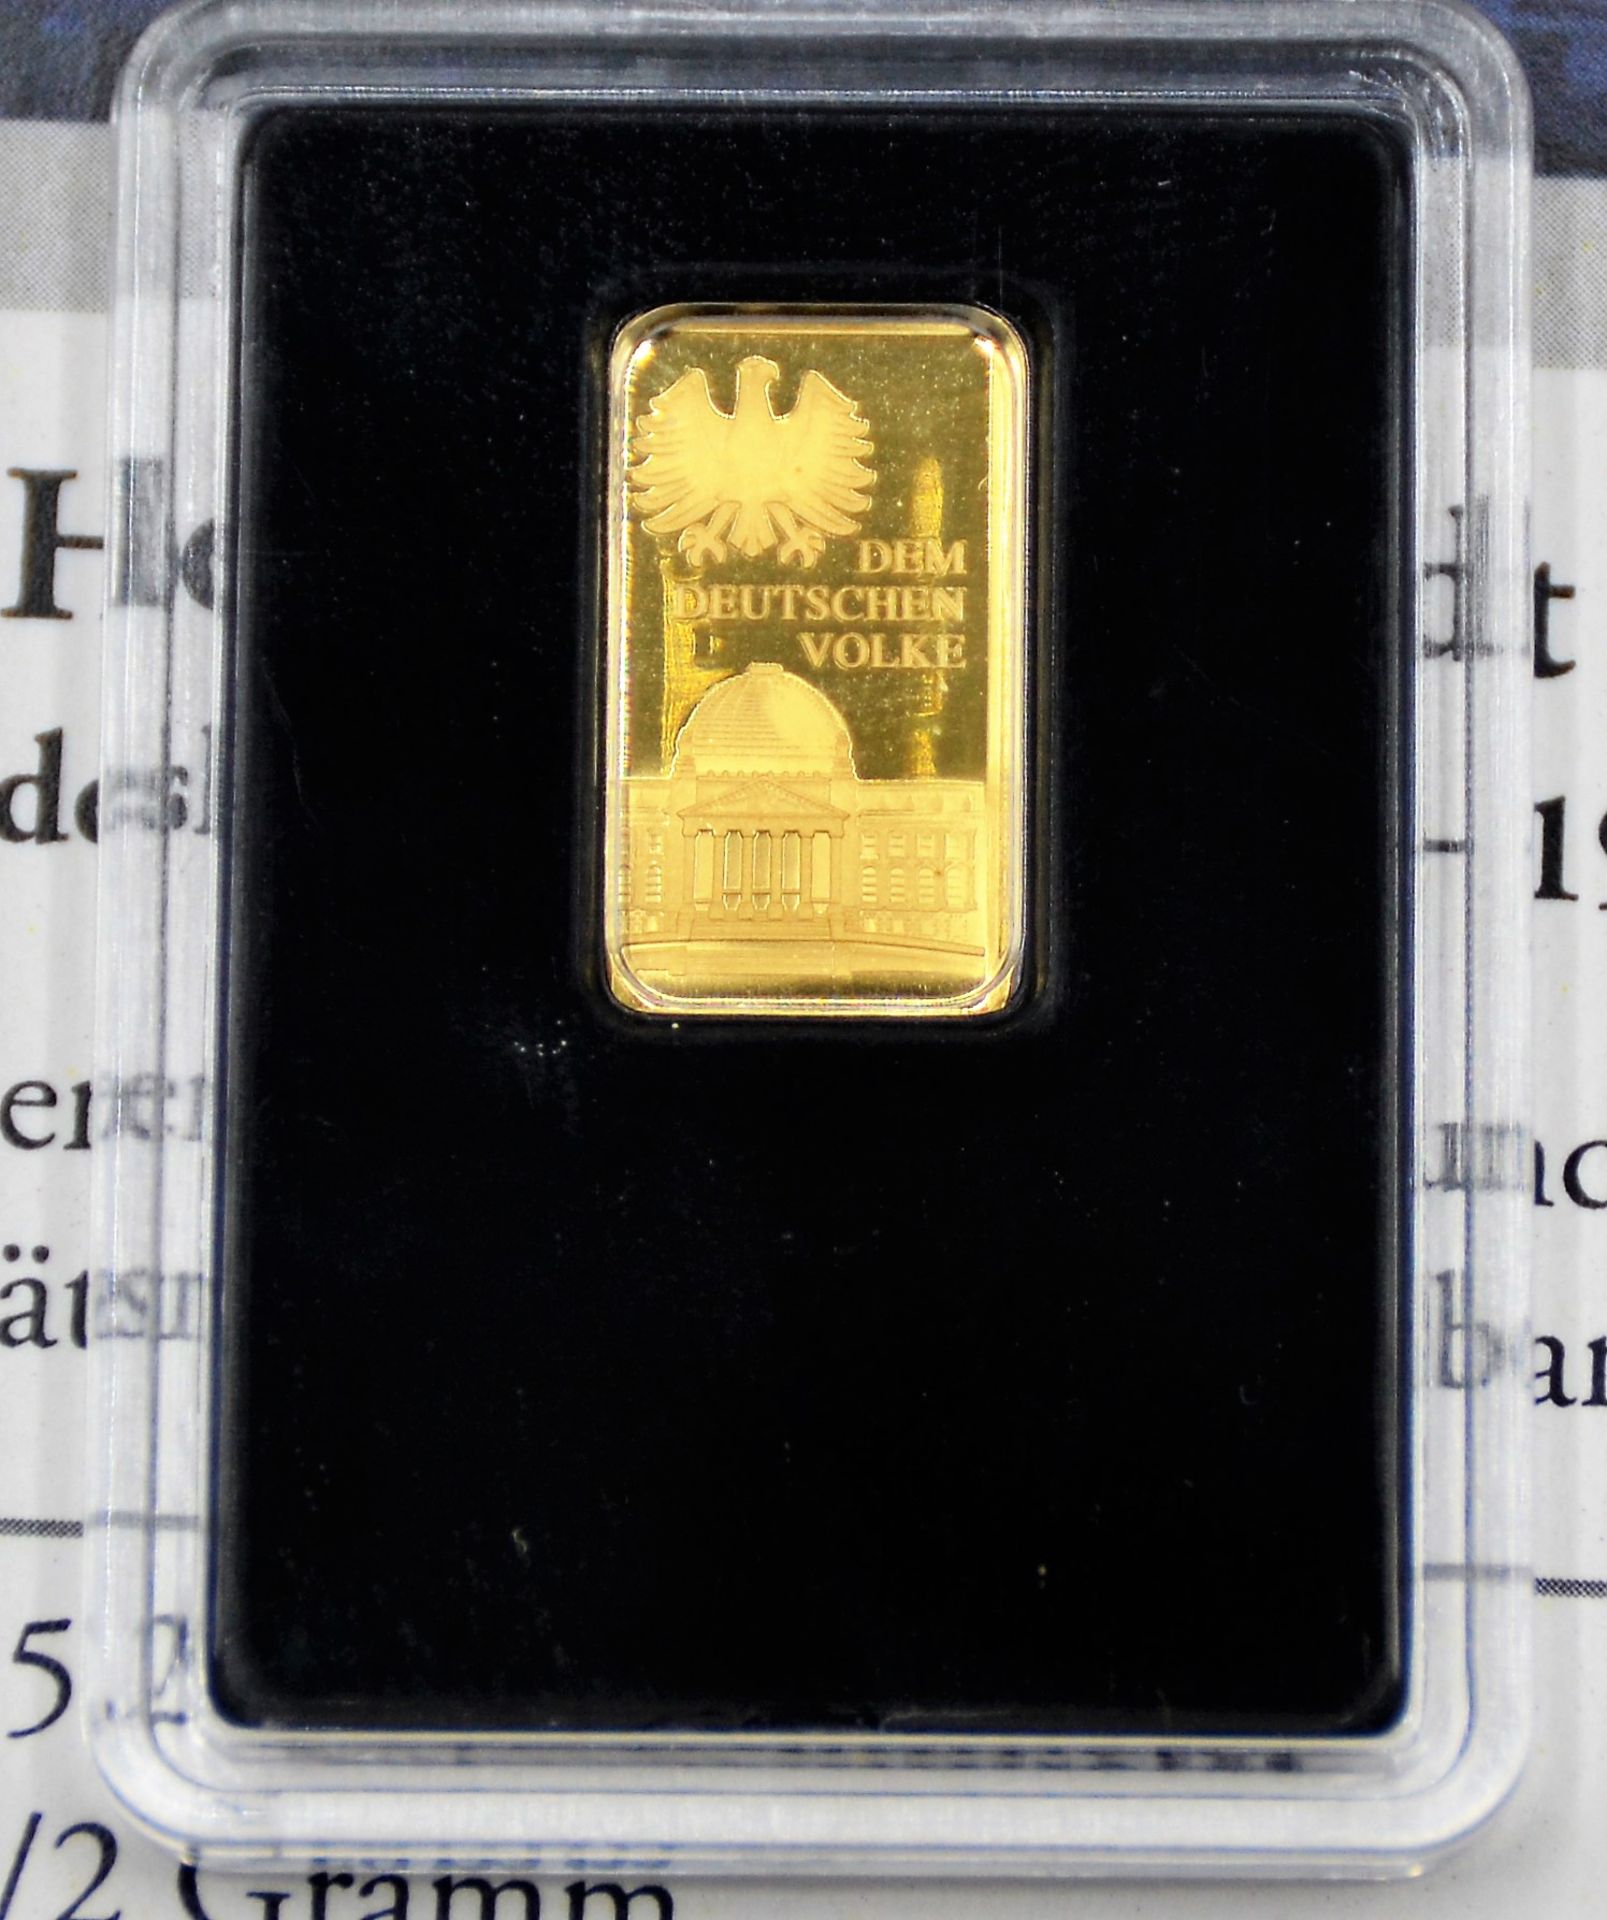 Goldbarren 0,5 g Helmut Schmidt, 15,2 x 8,6 mm, 999 Feingold, Polierte Platte - Bild 2 aus 2